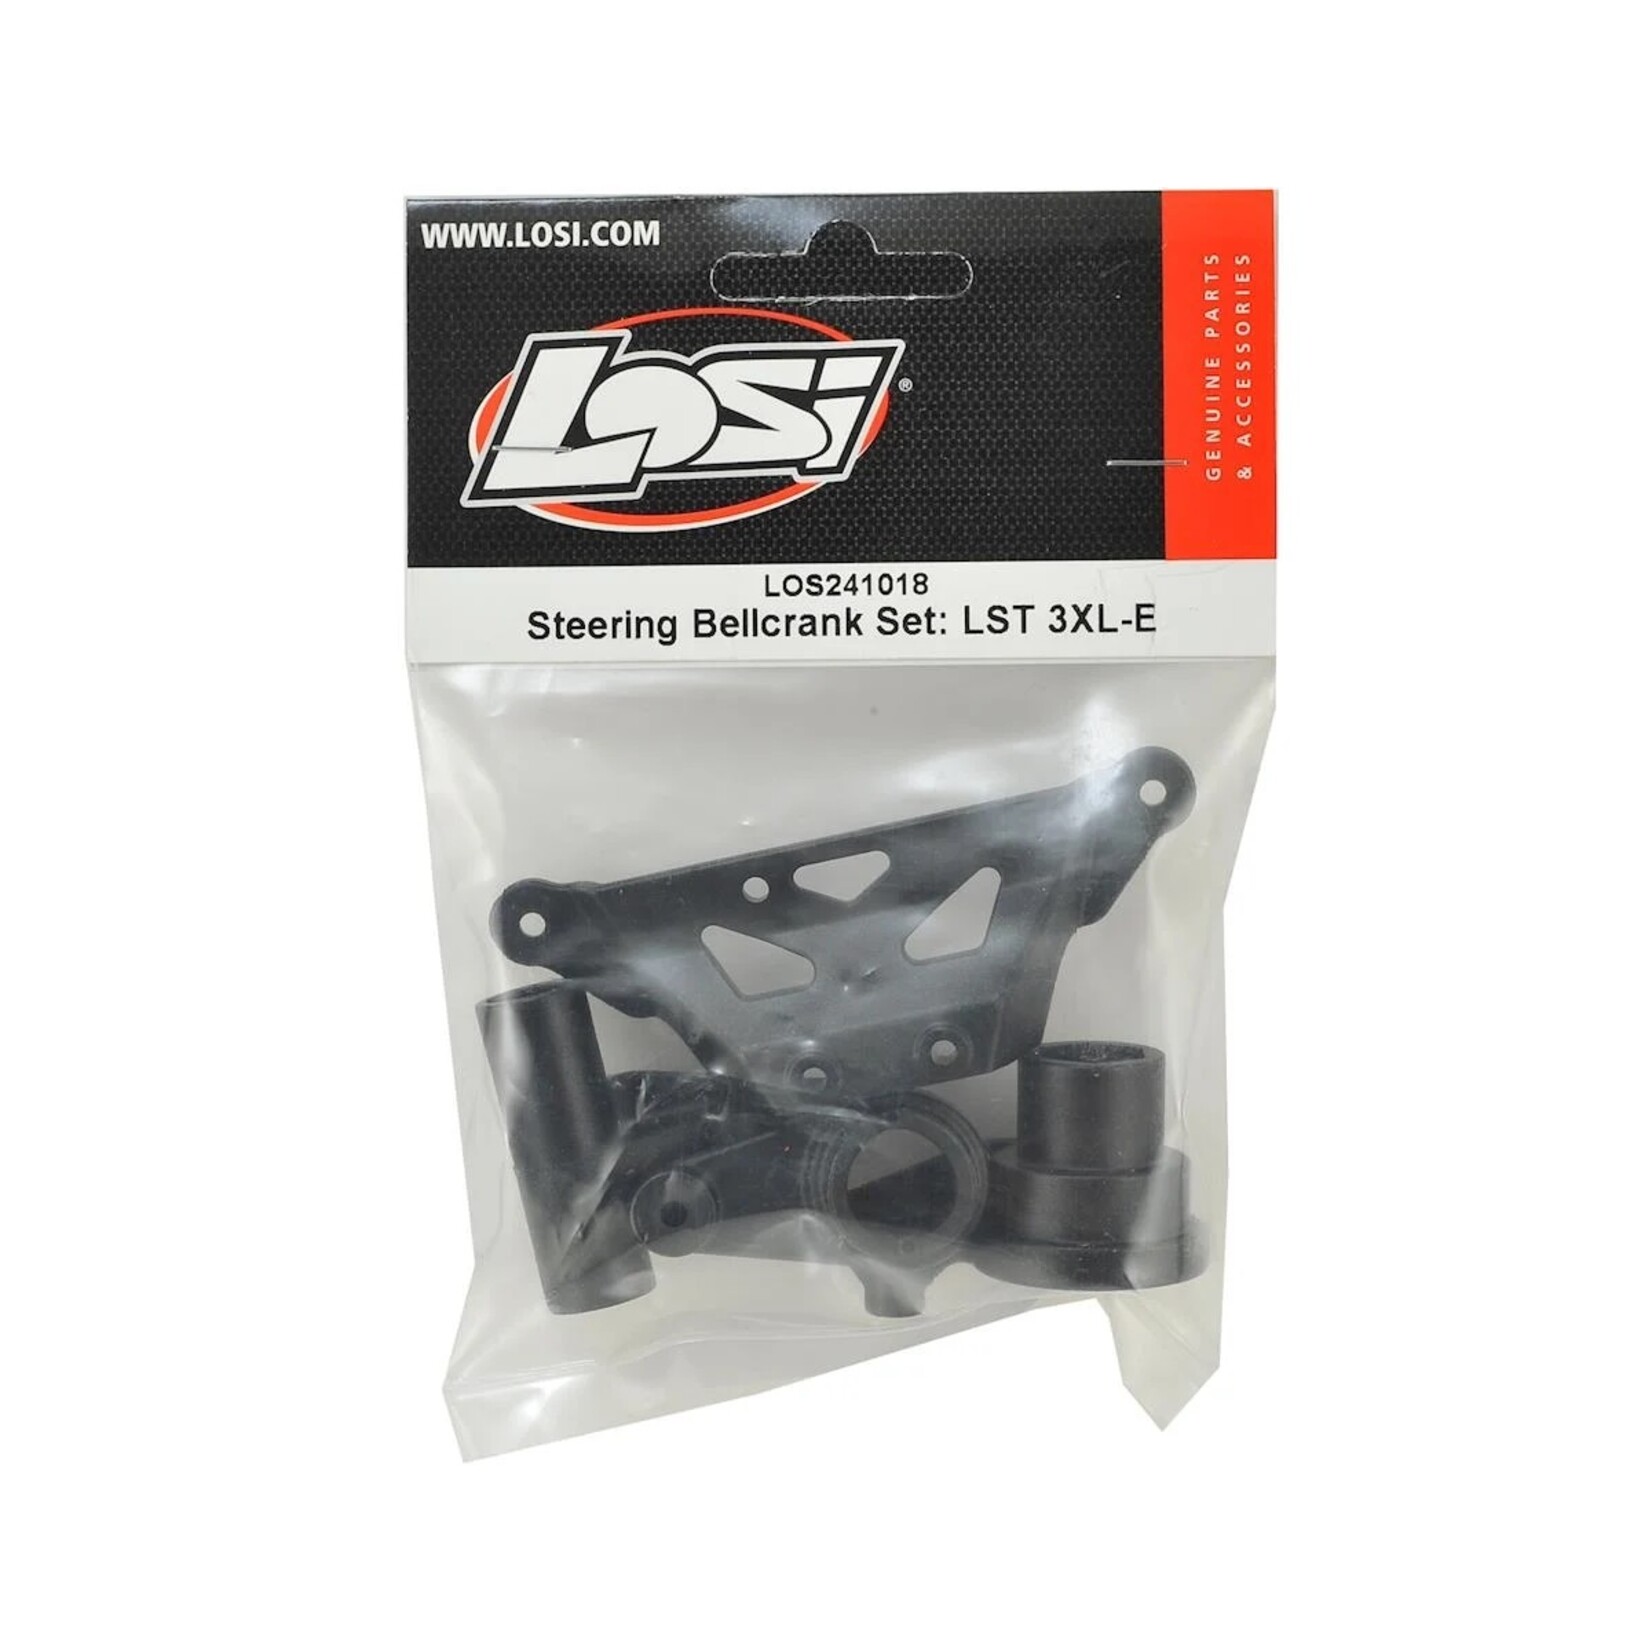 Losi Losi LST 3XL-E Steering Bellcrank Set #LOS241018